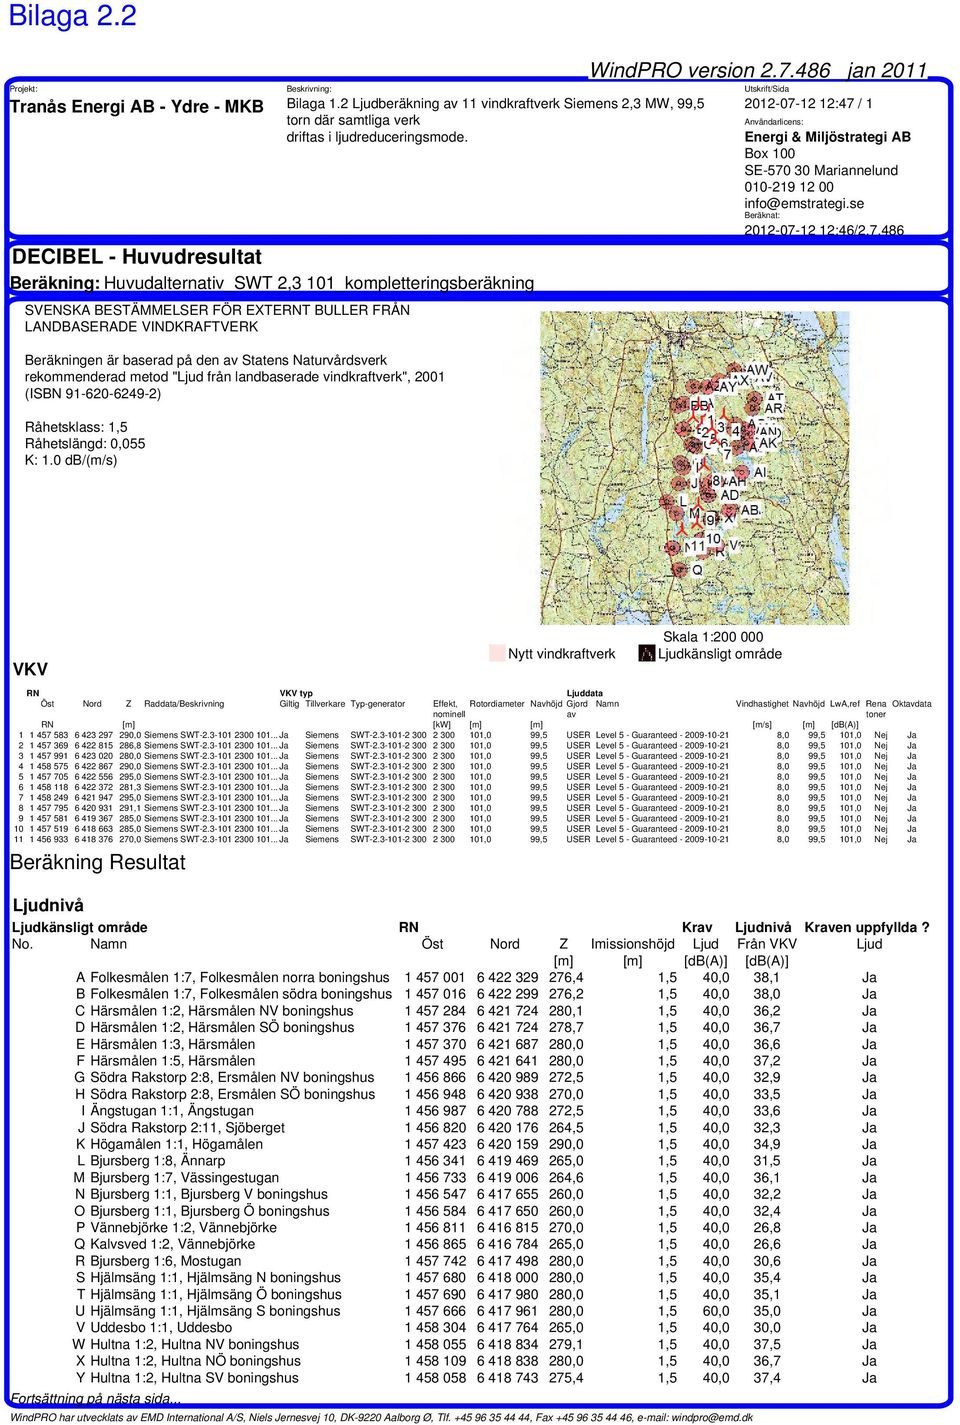 Naturvårdsverk rekommenderad metod "Ljud från landbaserade vindkraftverk", 2001 (ISBN 91-620-6249-2) Råhetsklass: 1,5 Råhetslängd: 0,055 K: 1.0 db/(m/s) WindPRO version 2.7.